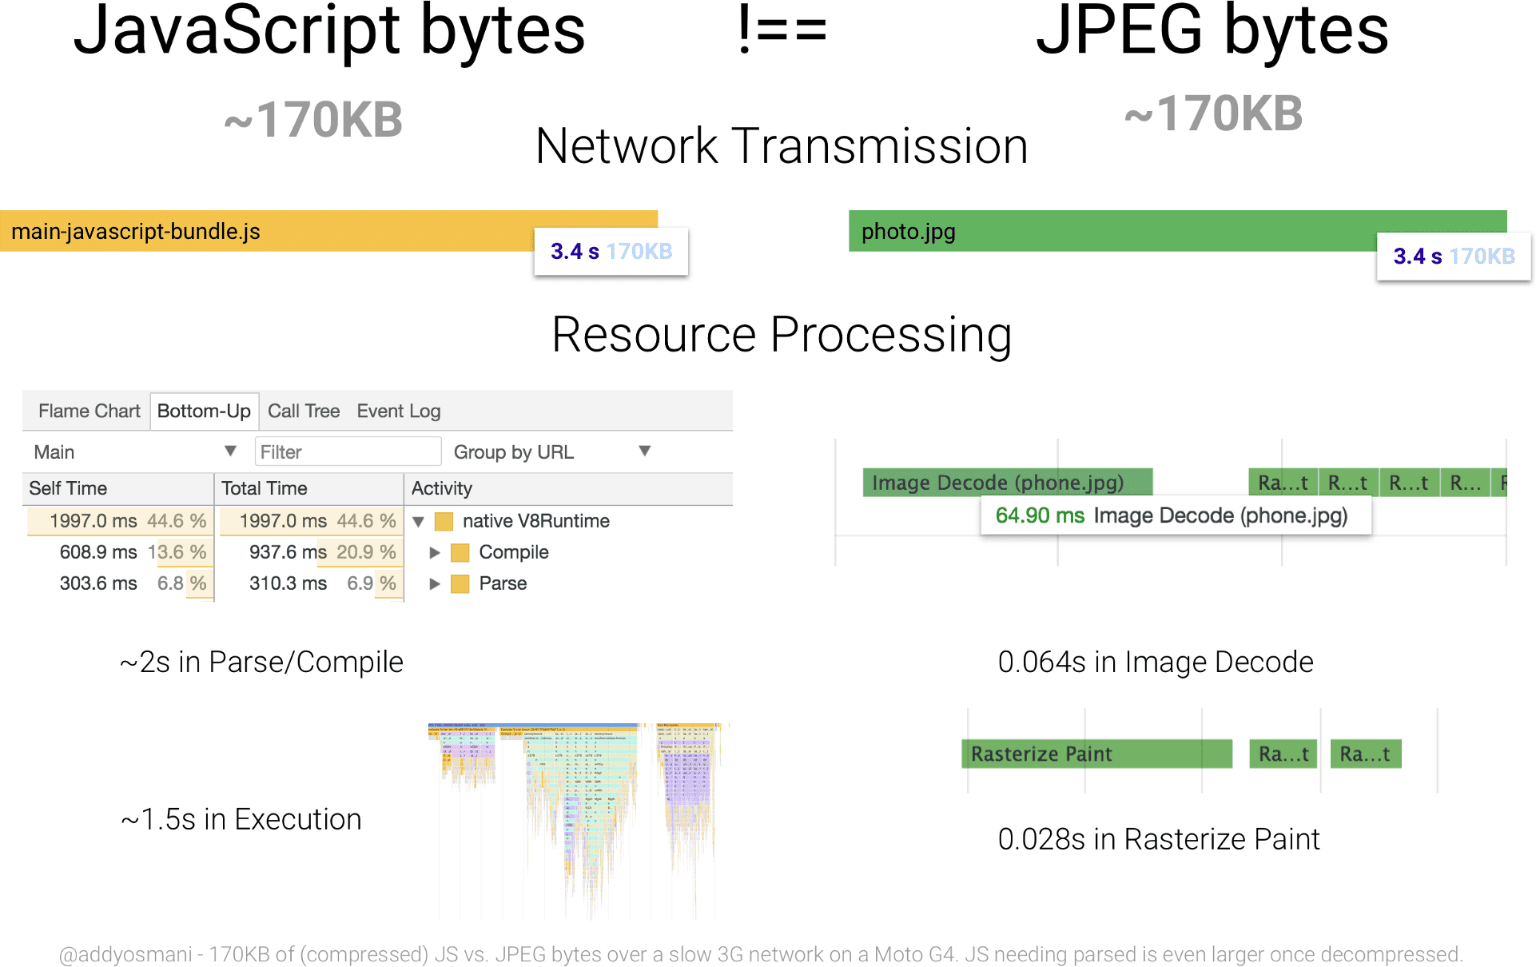 رسم بياني يقارن وقت معالجة 170 كيلوبايت من JavaScript مقابل صورة JPEG بحجم مكافئ مورد JavaScript أكثر كثافة لبايت من الموارد بالنسبة إلى البايت من تنسيق JPEG.